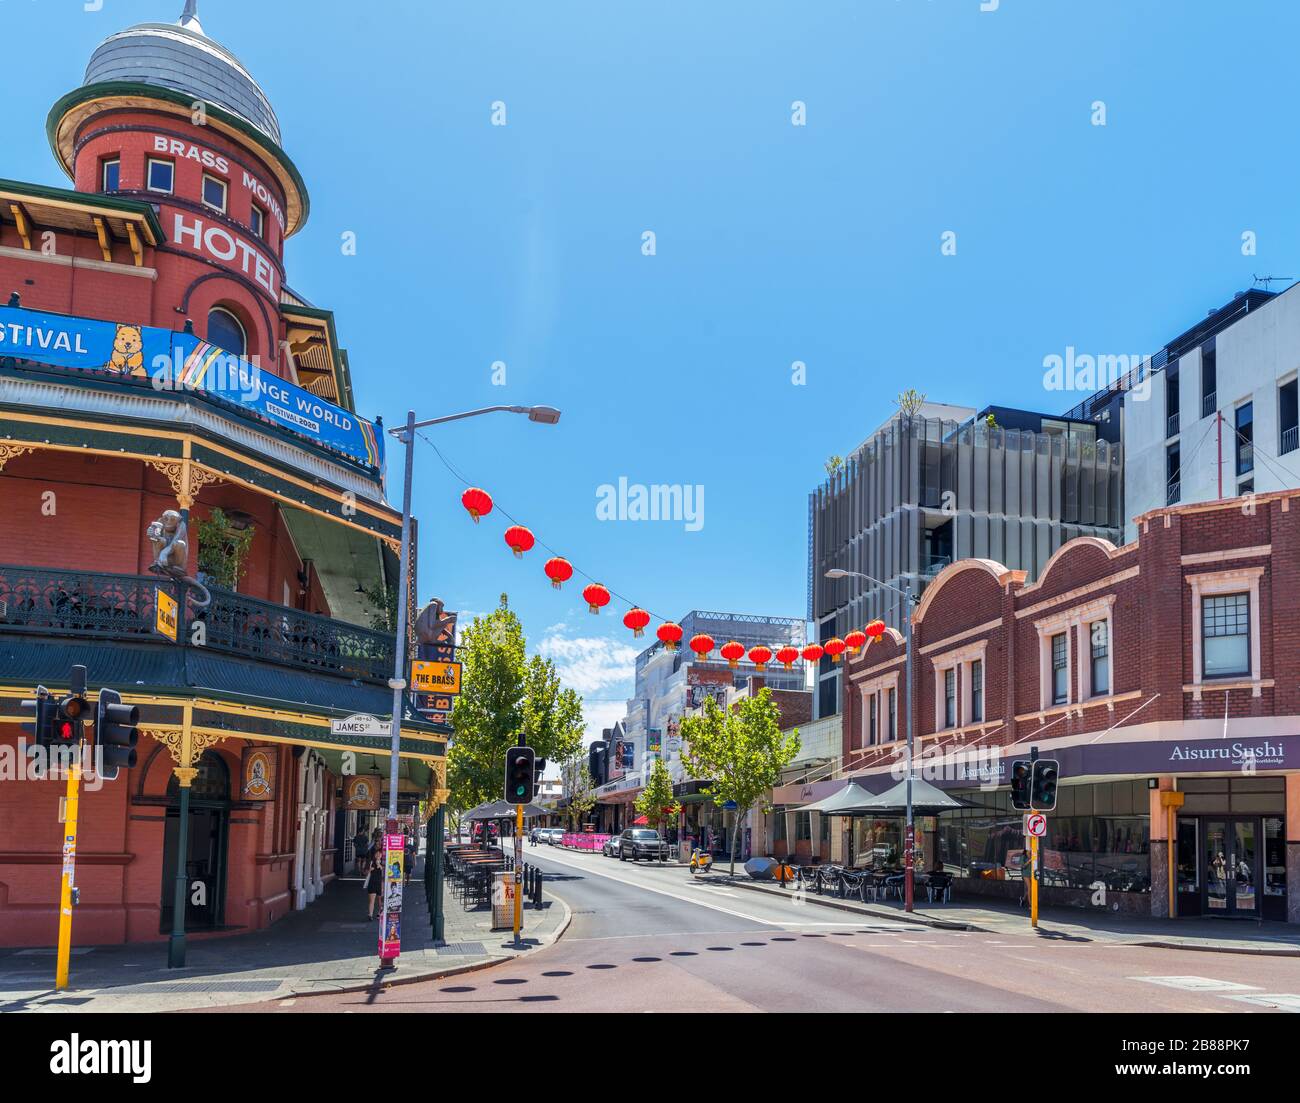 William Street im Stadtteil Northbridge mit dem Brass Monkey Hotel auf der linken Seite, Perth, Western Australia, Australien Stockfoto